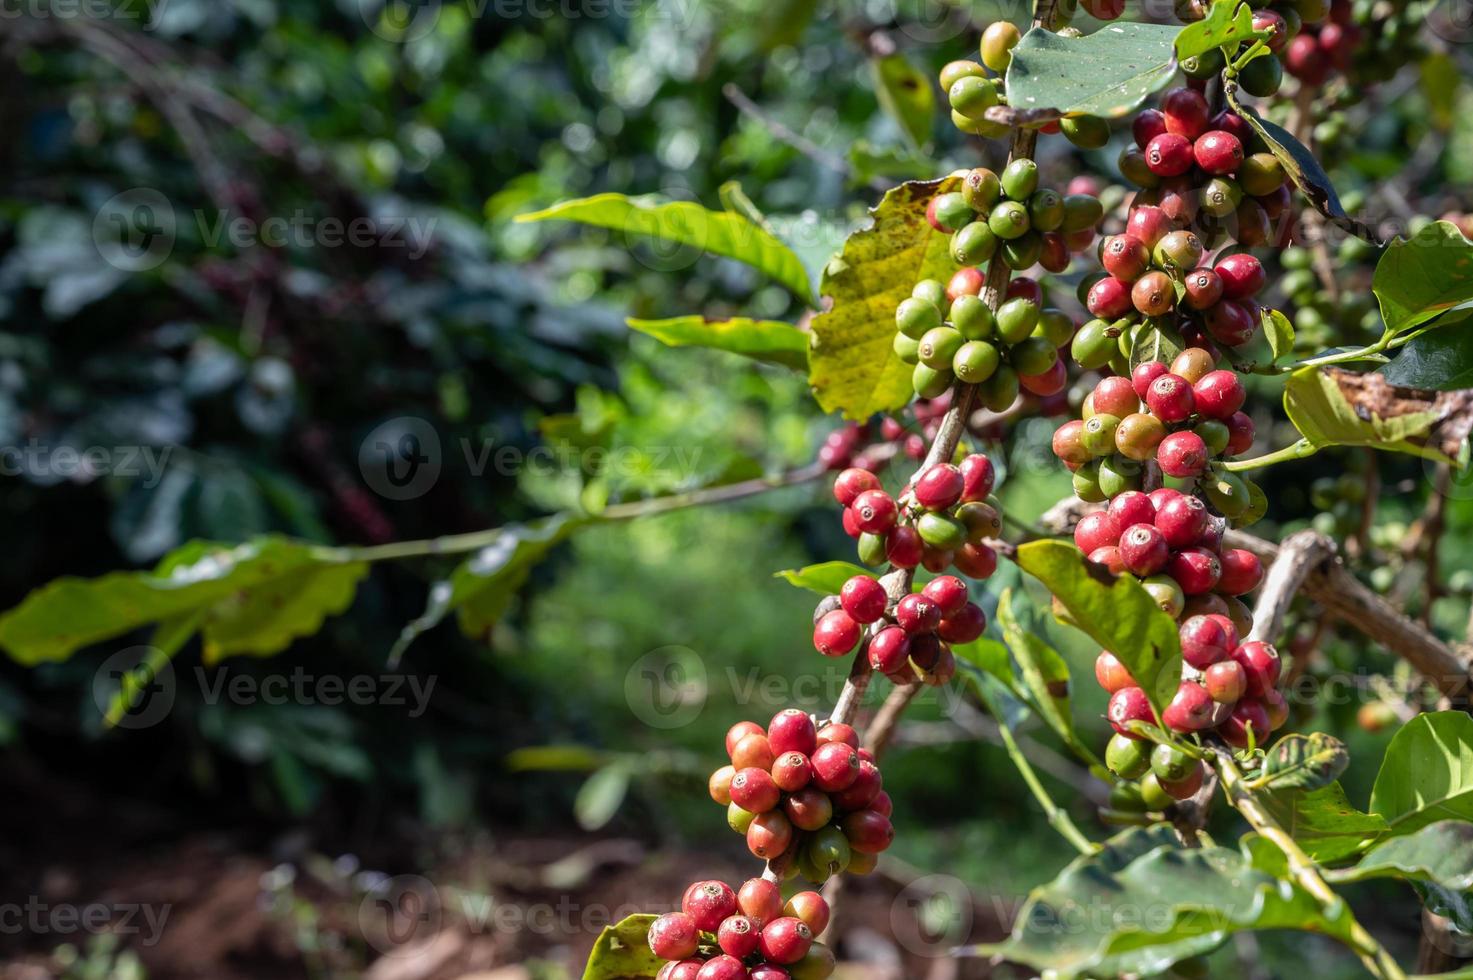 caféier avec croissance de cerises de café dans le champ de plantation. les grains de café sont utilisés pour fabriquer diverses boissons et produits à base de café. photo